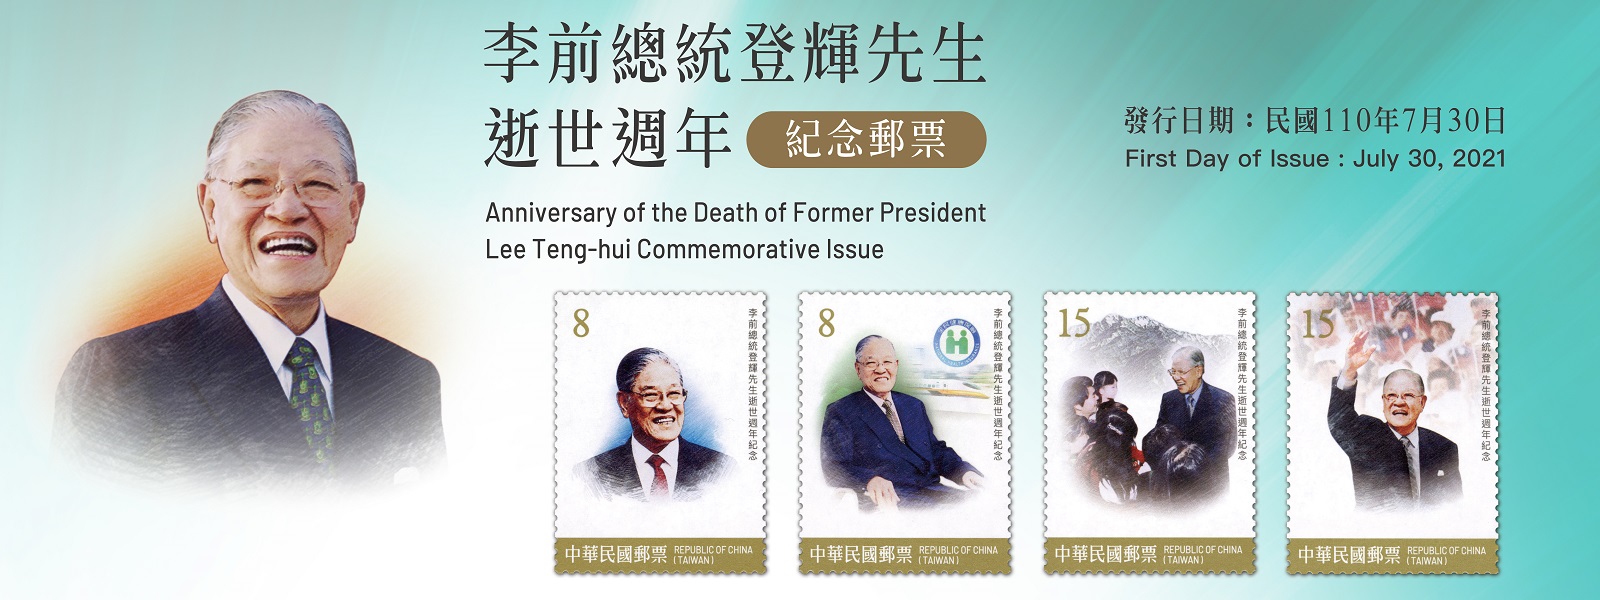 廣告連結:紀342 李前總統登輝先生逝世週年紀念郵票